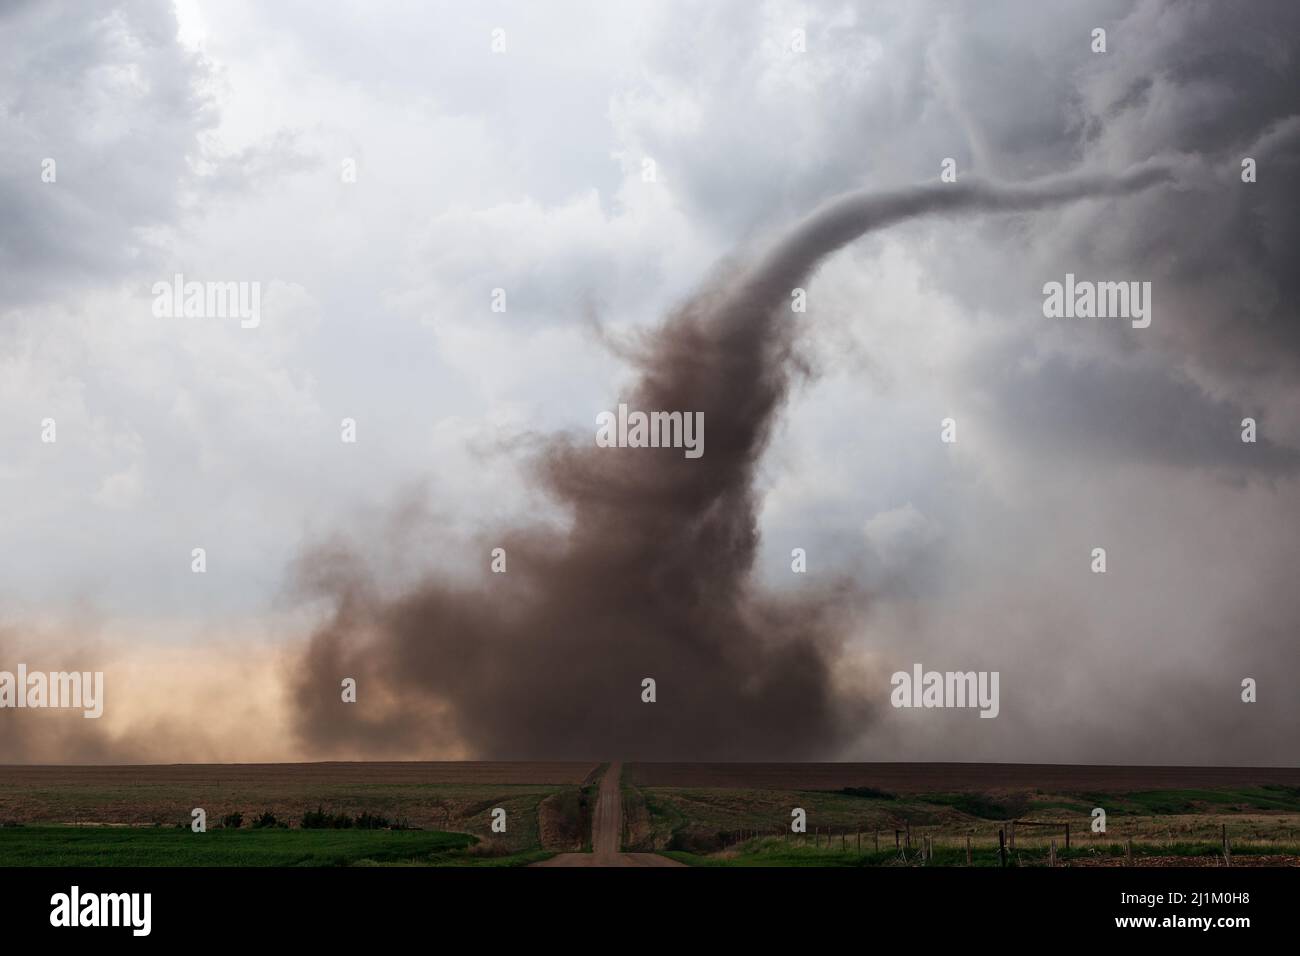 Embudo de tornado que se acerca de una tormenta cerca de McCook, Nebraska, EE.UU Foto de stock